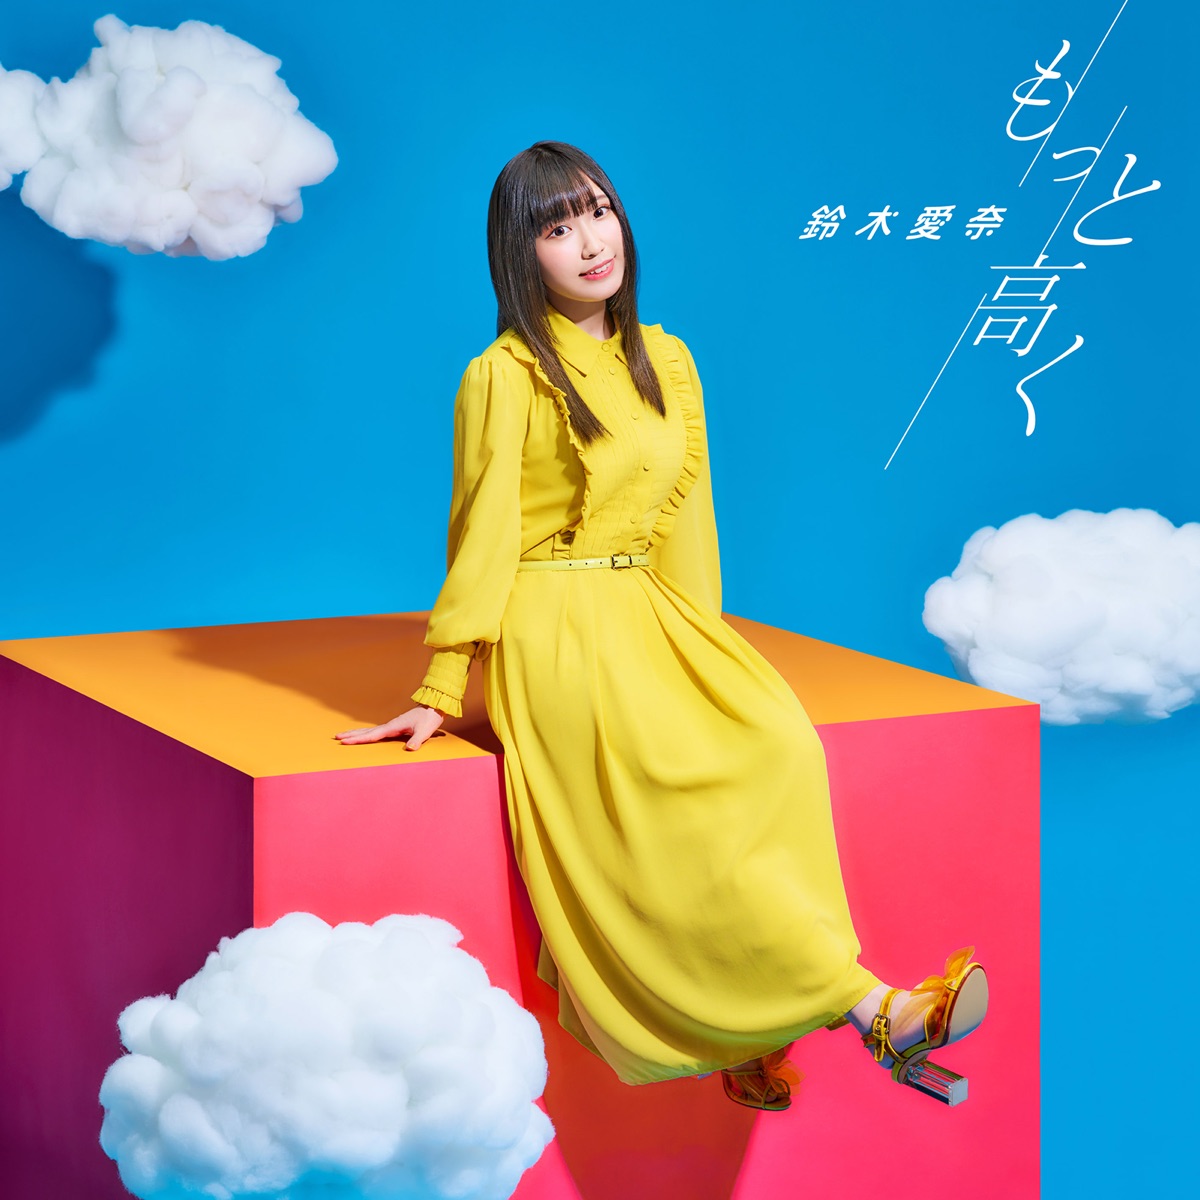 Cover art for『Aina Suzuki - Motto Takaku』from the release『Motto Takaku』